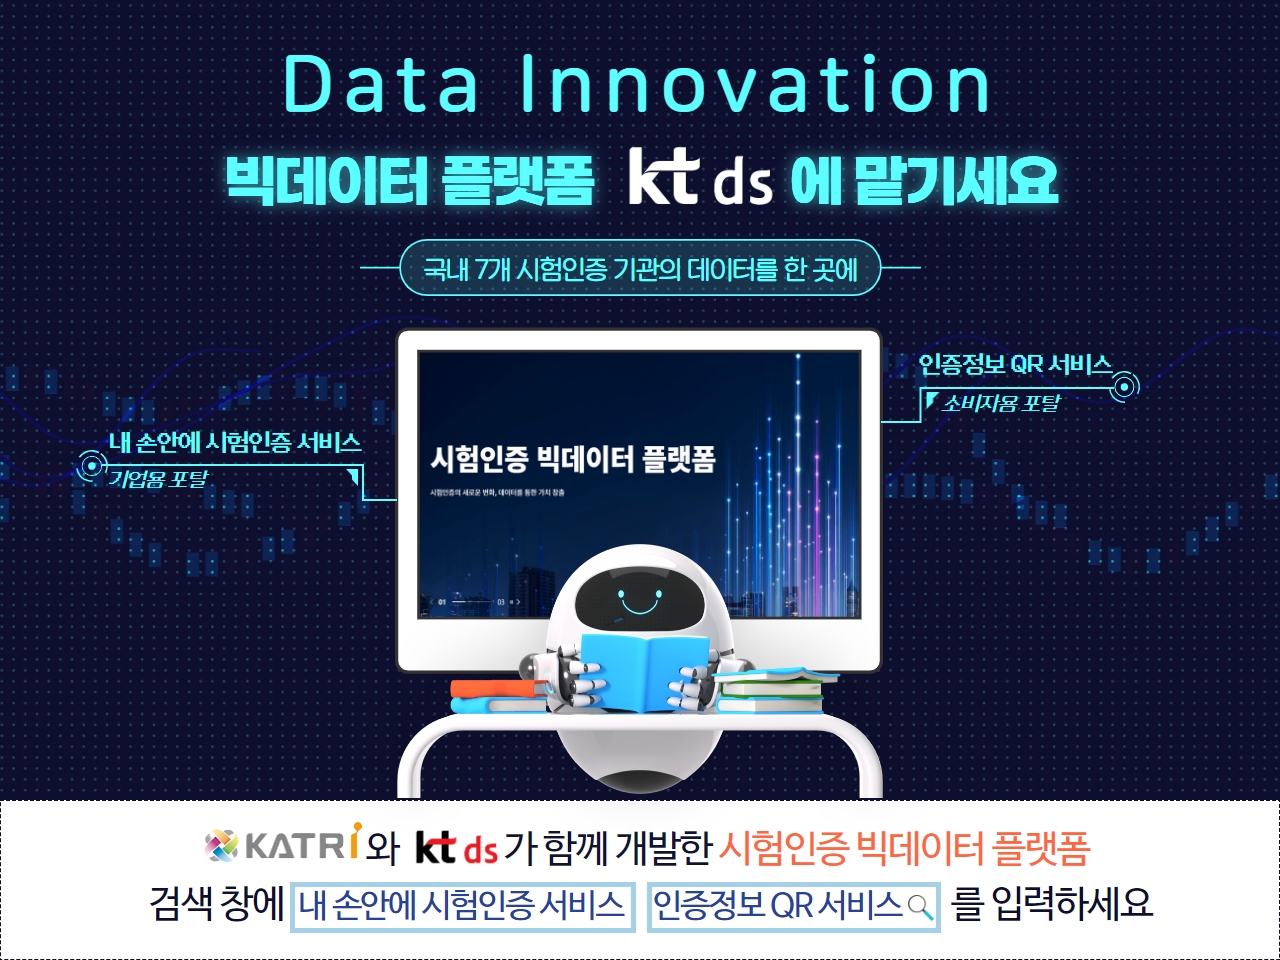 KT그룹의 IT 서비스 전문기업 KT DS가 국내 시험인증기관의 데이터를 관리하는 ‘시험인증 빅데이터 플랫폼’을 구축했다고 6일 밝혔다. 시험인증 빅데이터 플랫폼 구축 완료 홍보 이미지. 제공=KT